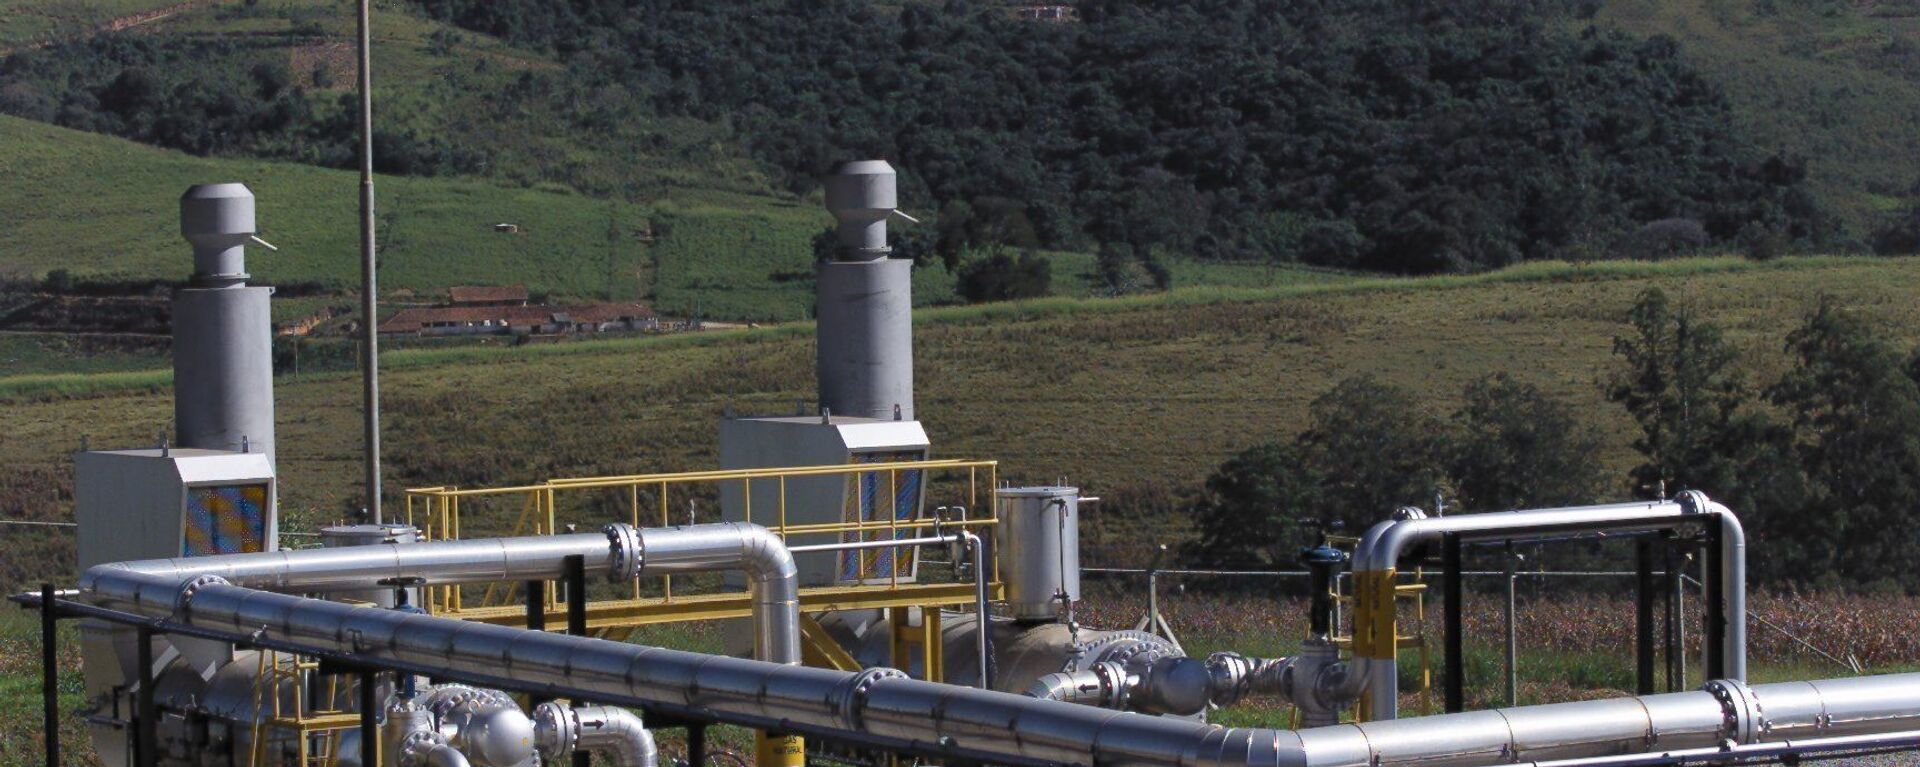 Tubulações que trazem o gás do gasoduto Brasil-Bolívia, em Itatiba, interior de São Paulo - Sputnik Brasil, 1920, 19.08.2021